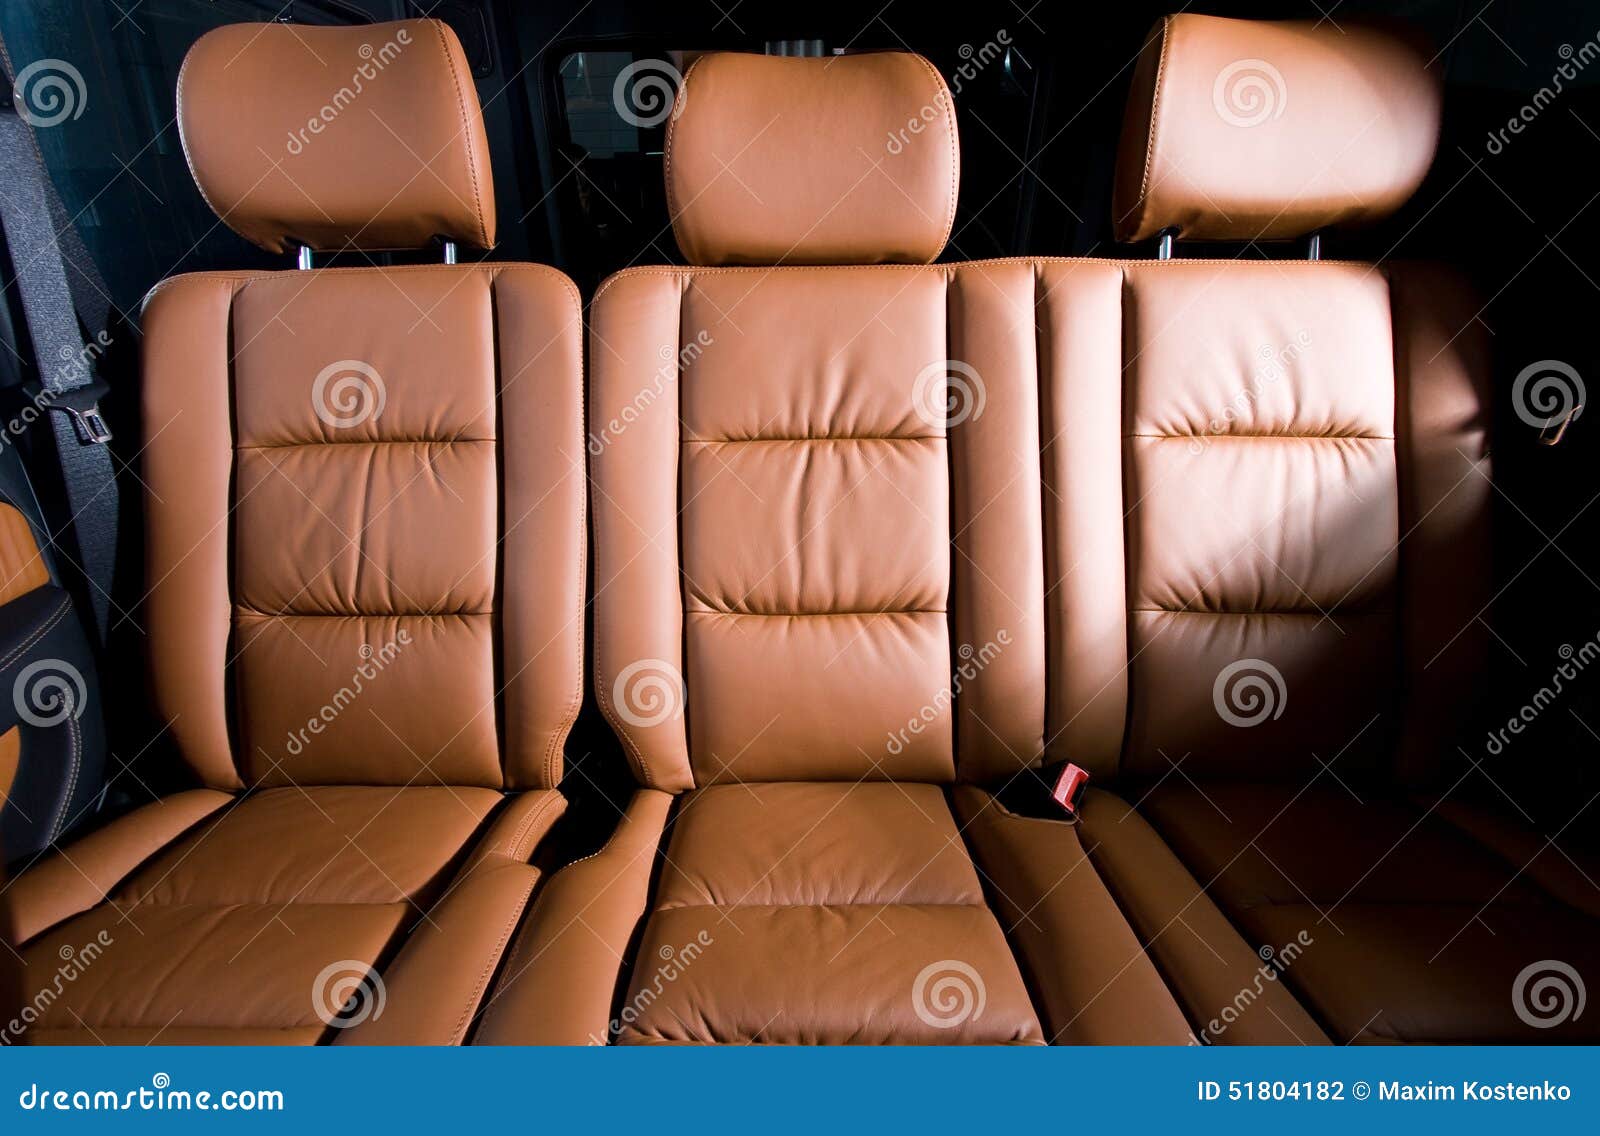 Без пассажирских сидений